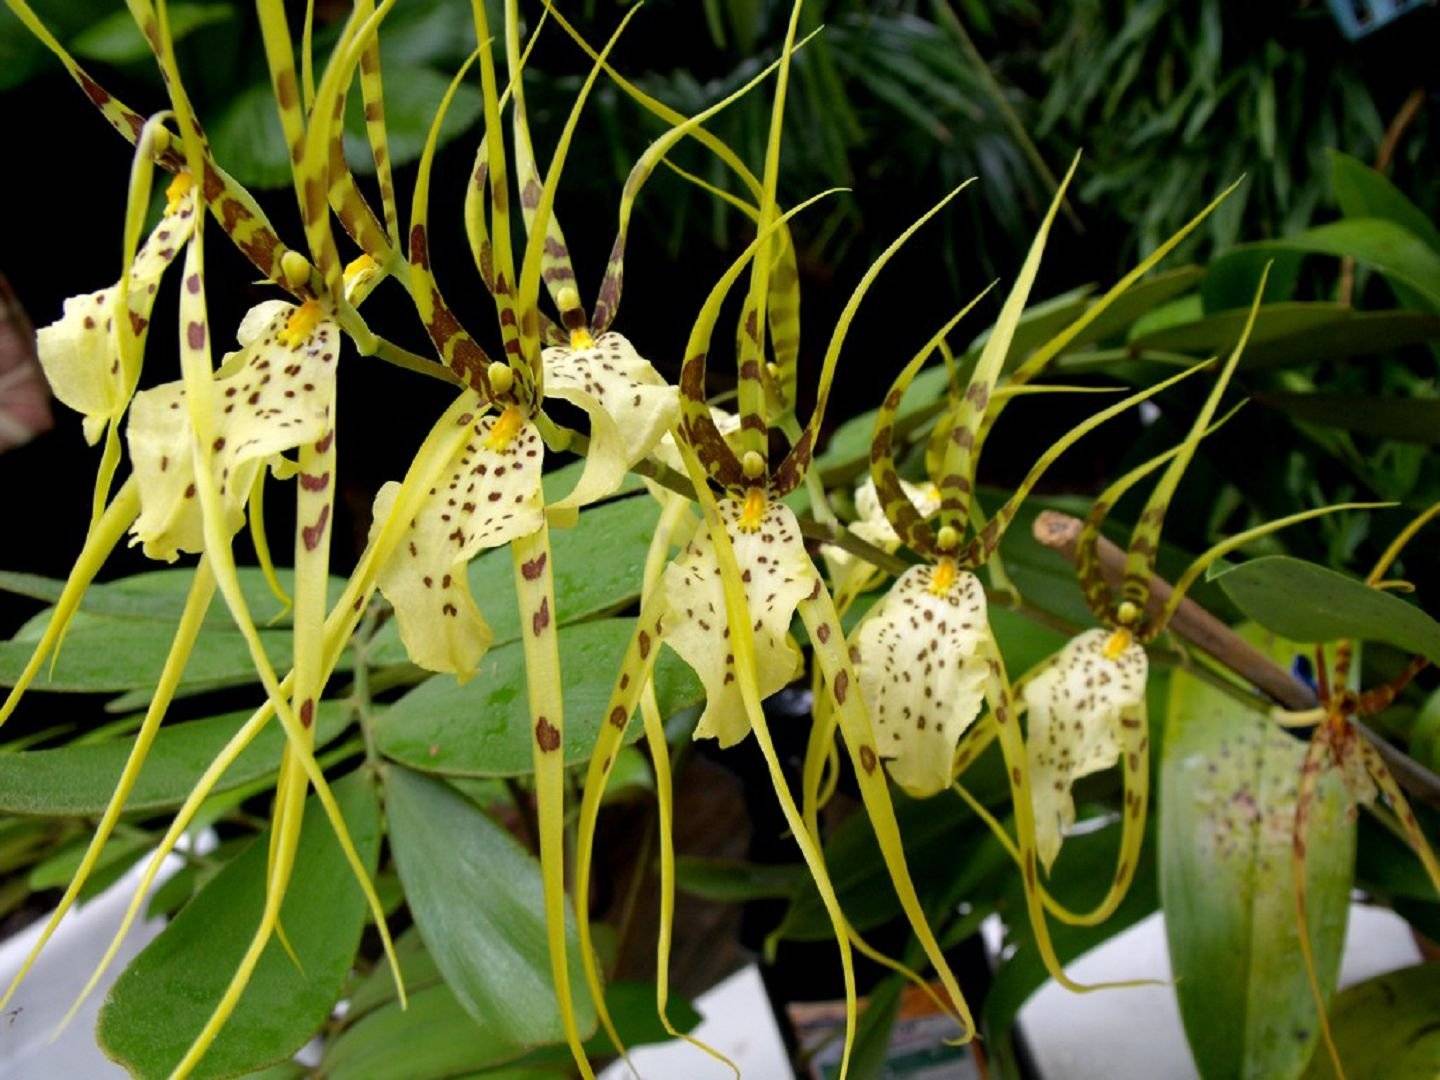 Орхидея брассия: особенности и внешний вид цветка с фото, почему растение называют "орхидея паук", основные правила посадки и ухода в домашних условиях